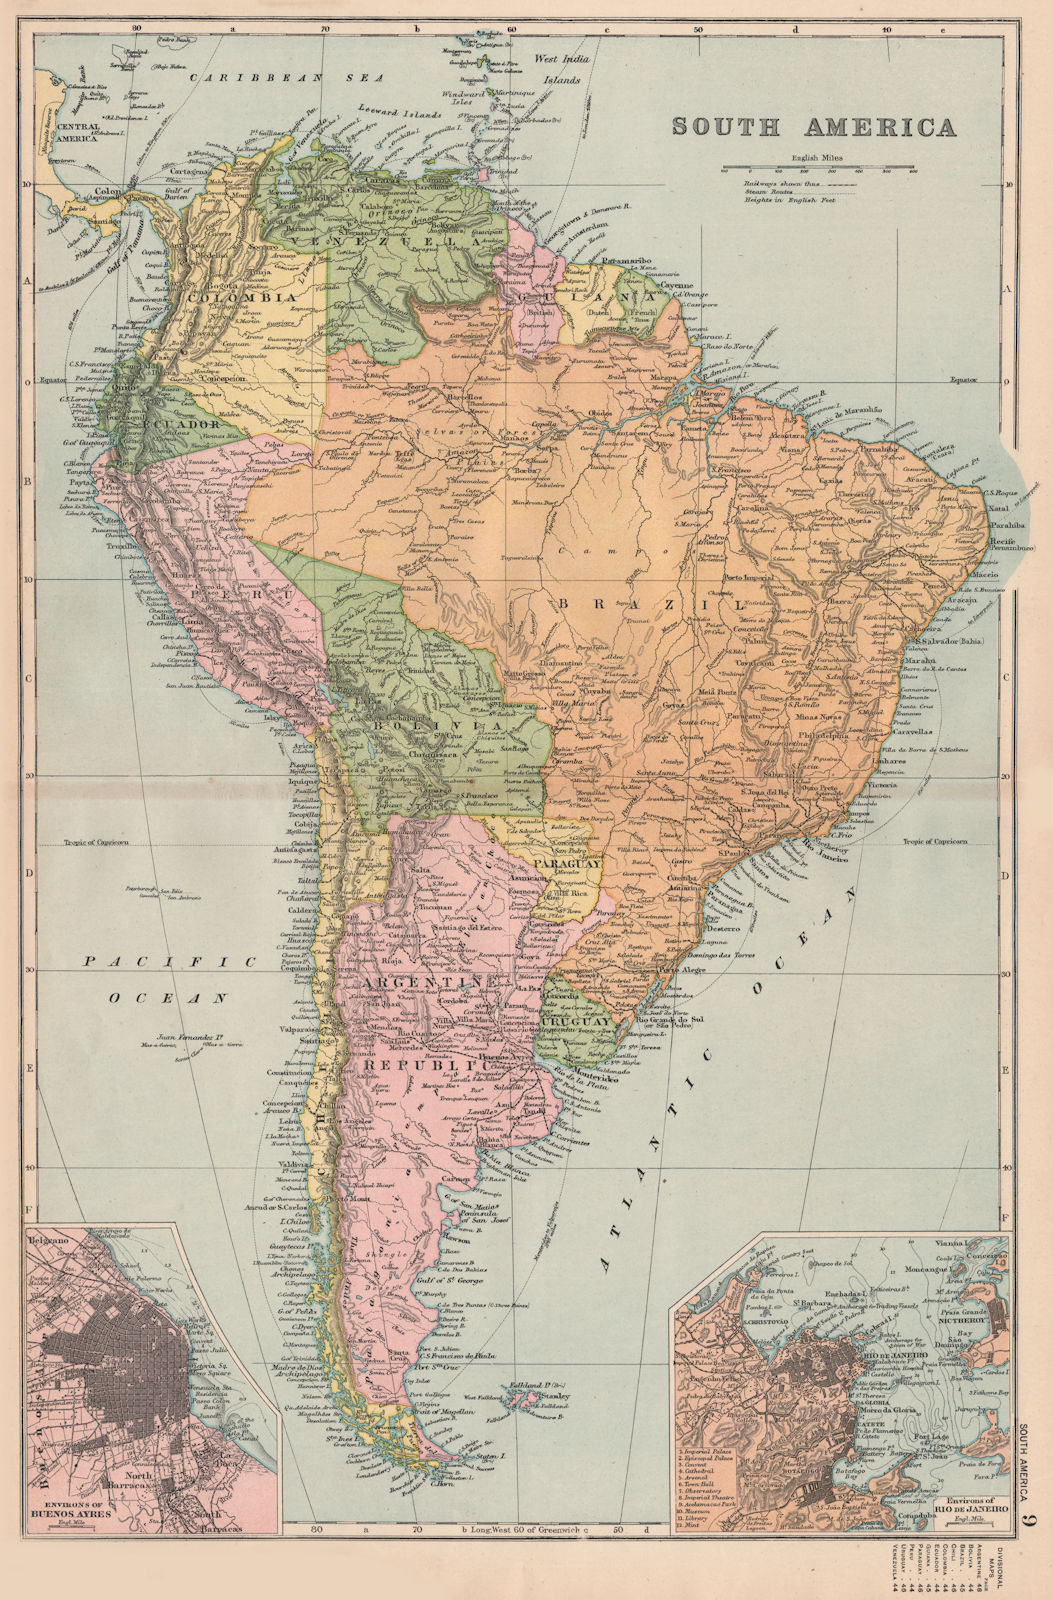 Associate Product SOUTH AMERICA. Political. Buenos Aires Rio de Janeiro. BACON 1893 old map